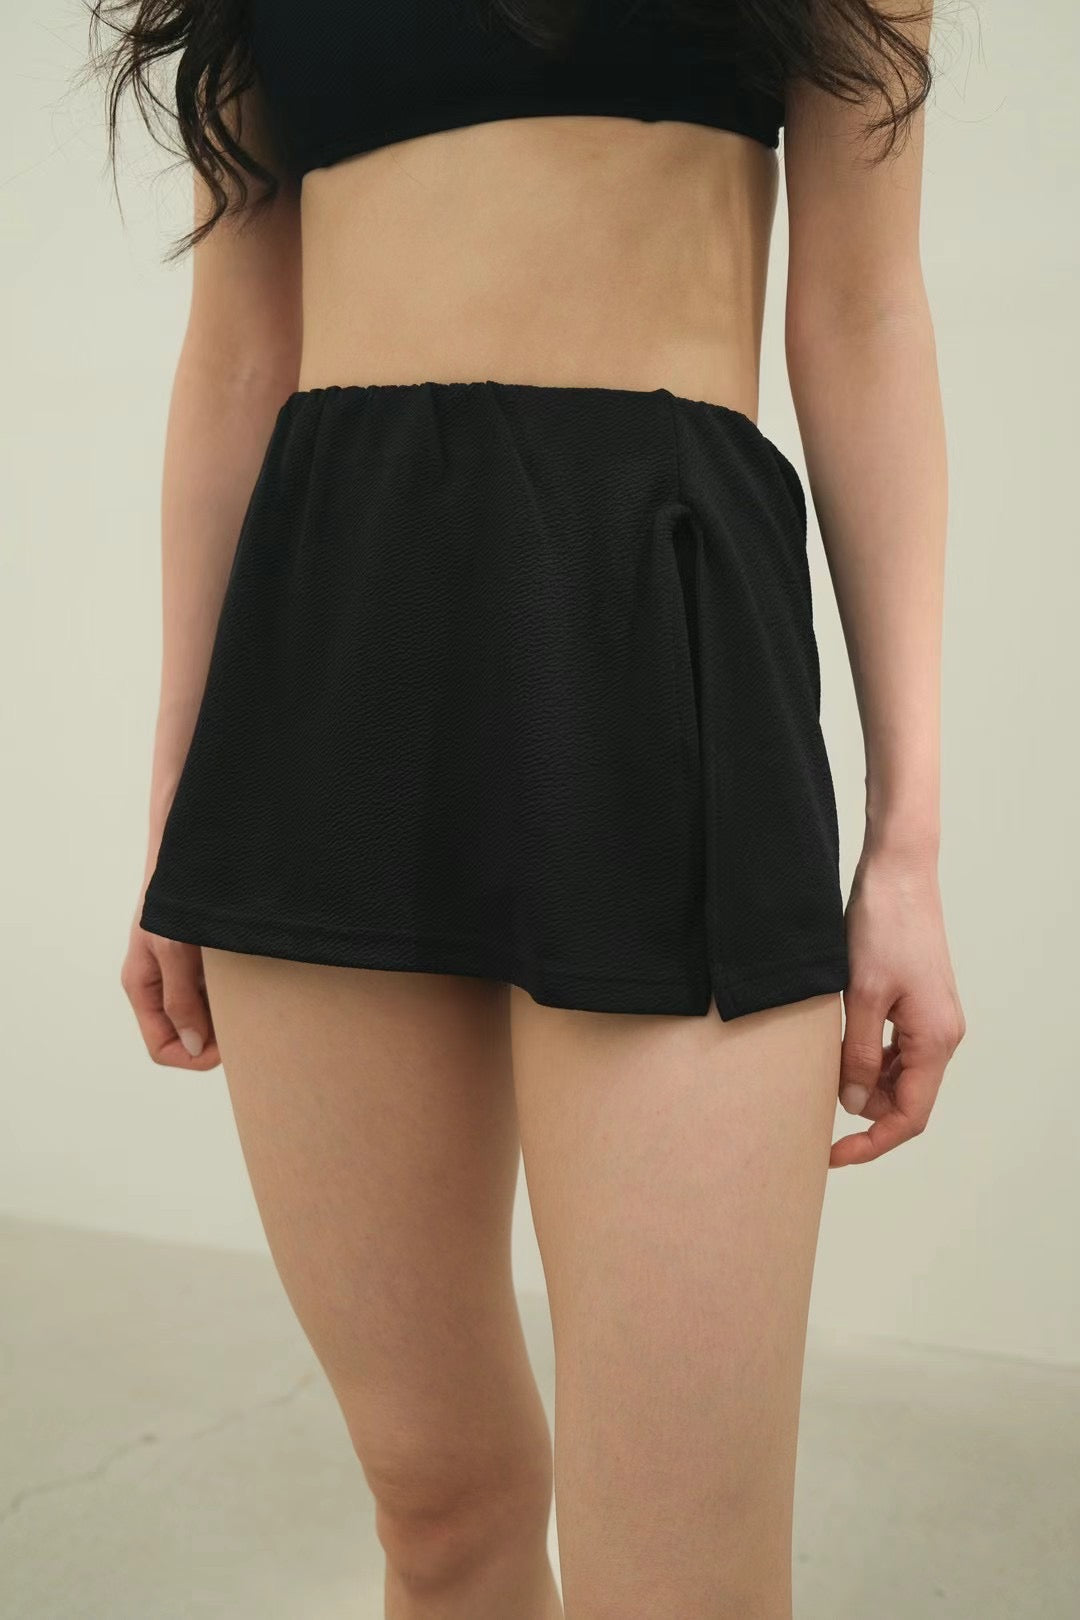 （一套四件) 3 Color Swimsuit Bikini Set With Bag | Ivory | Brown | Black